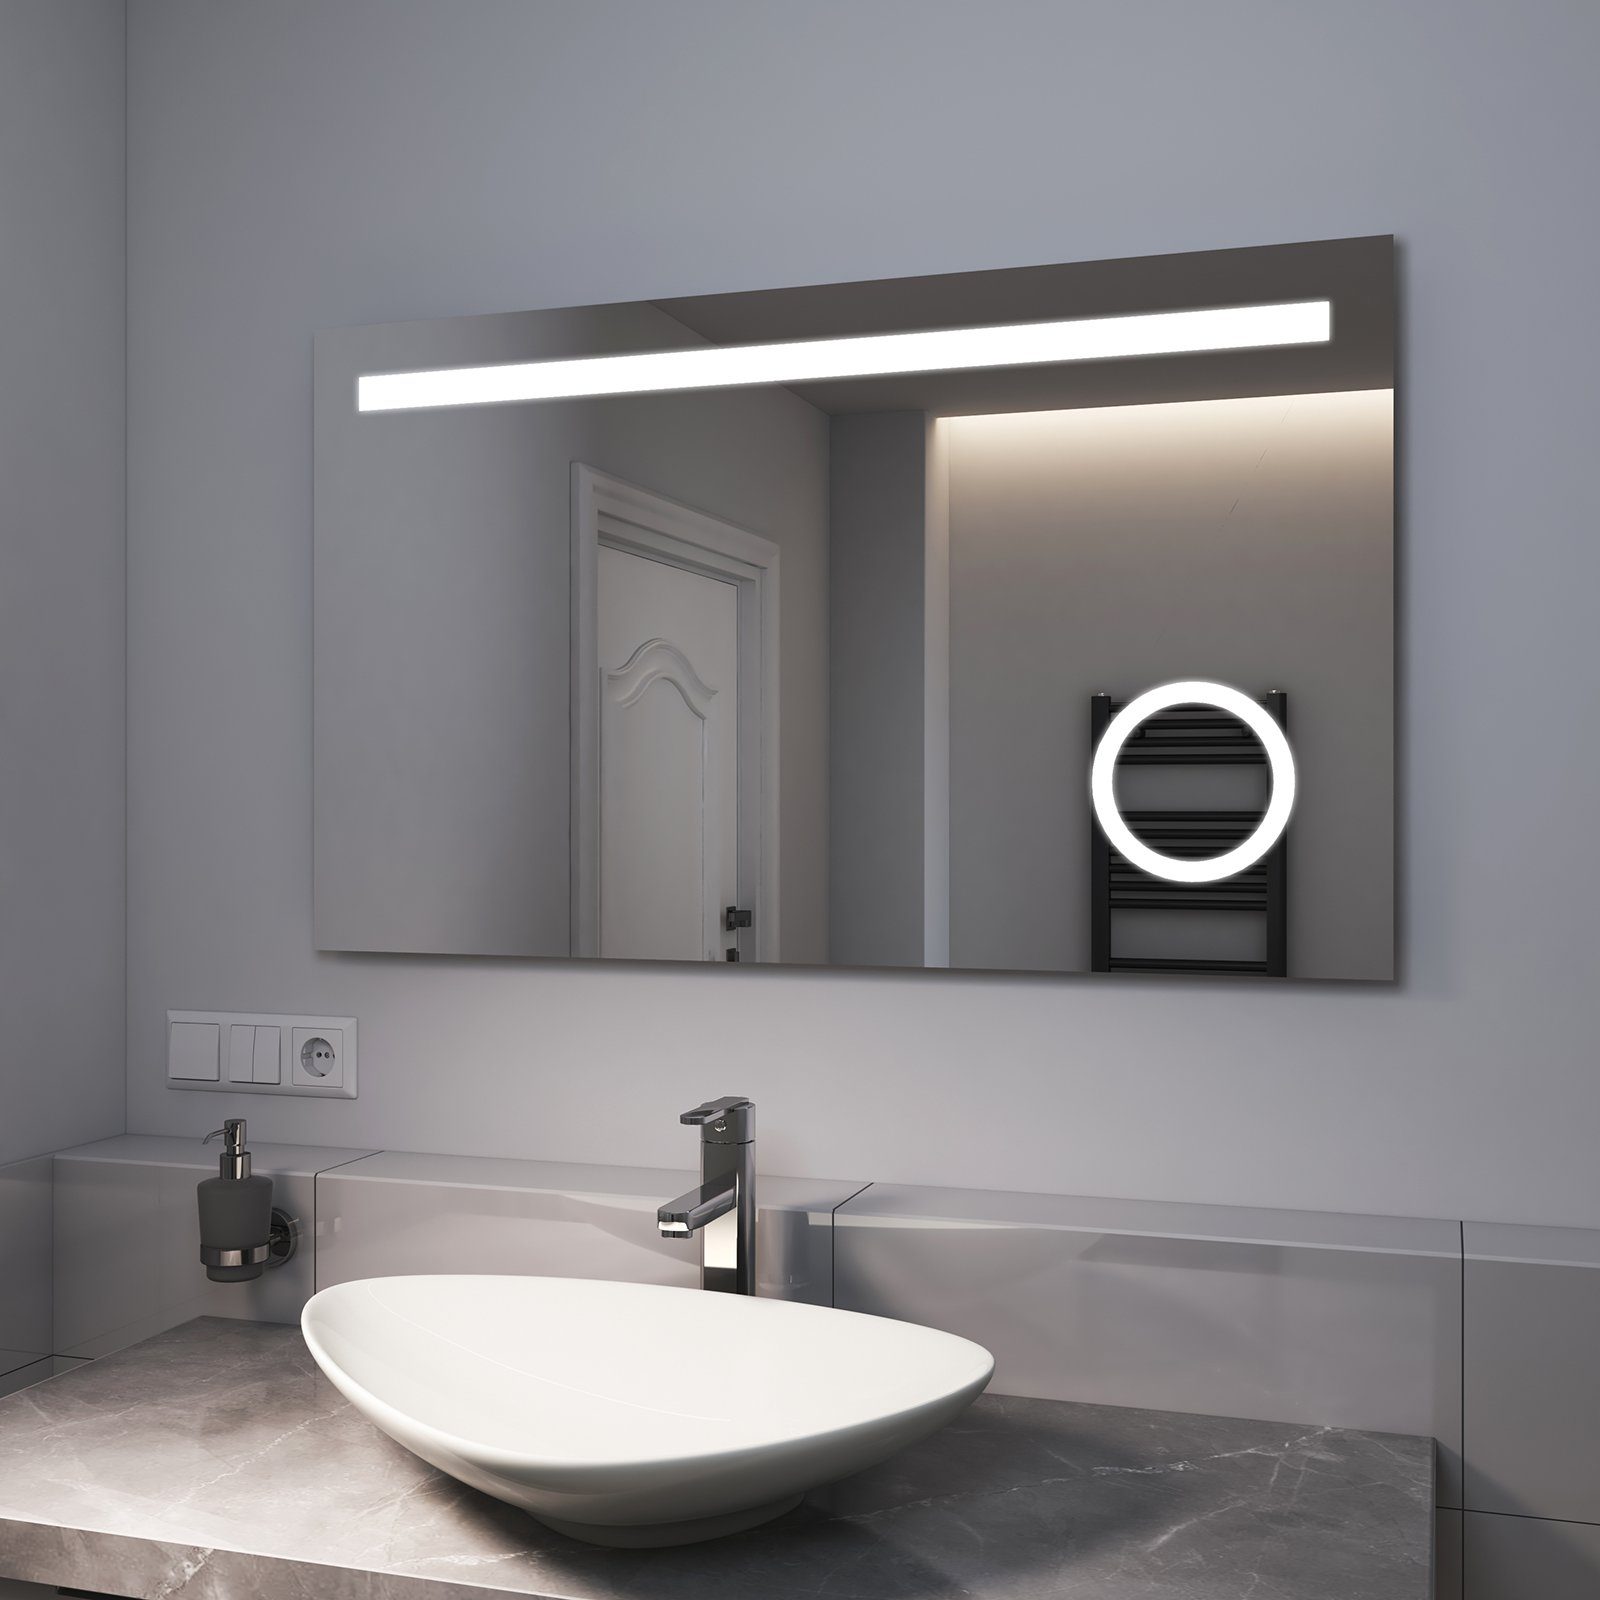 Beleuchtung, Lichtfarbe Warmweiß/Kaltweiß mit Beschlagfrei, Taste LED EMKE Badspiegel Wandspiegel, und LED 2 mit EMKE Badspiegel